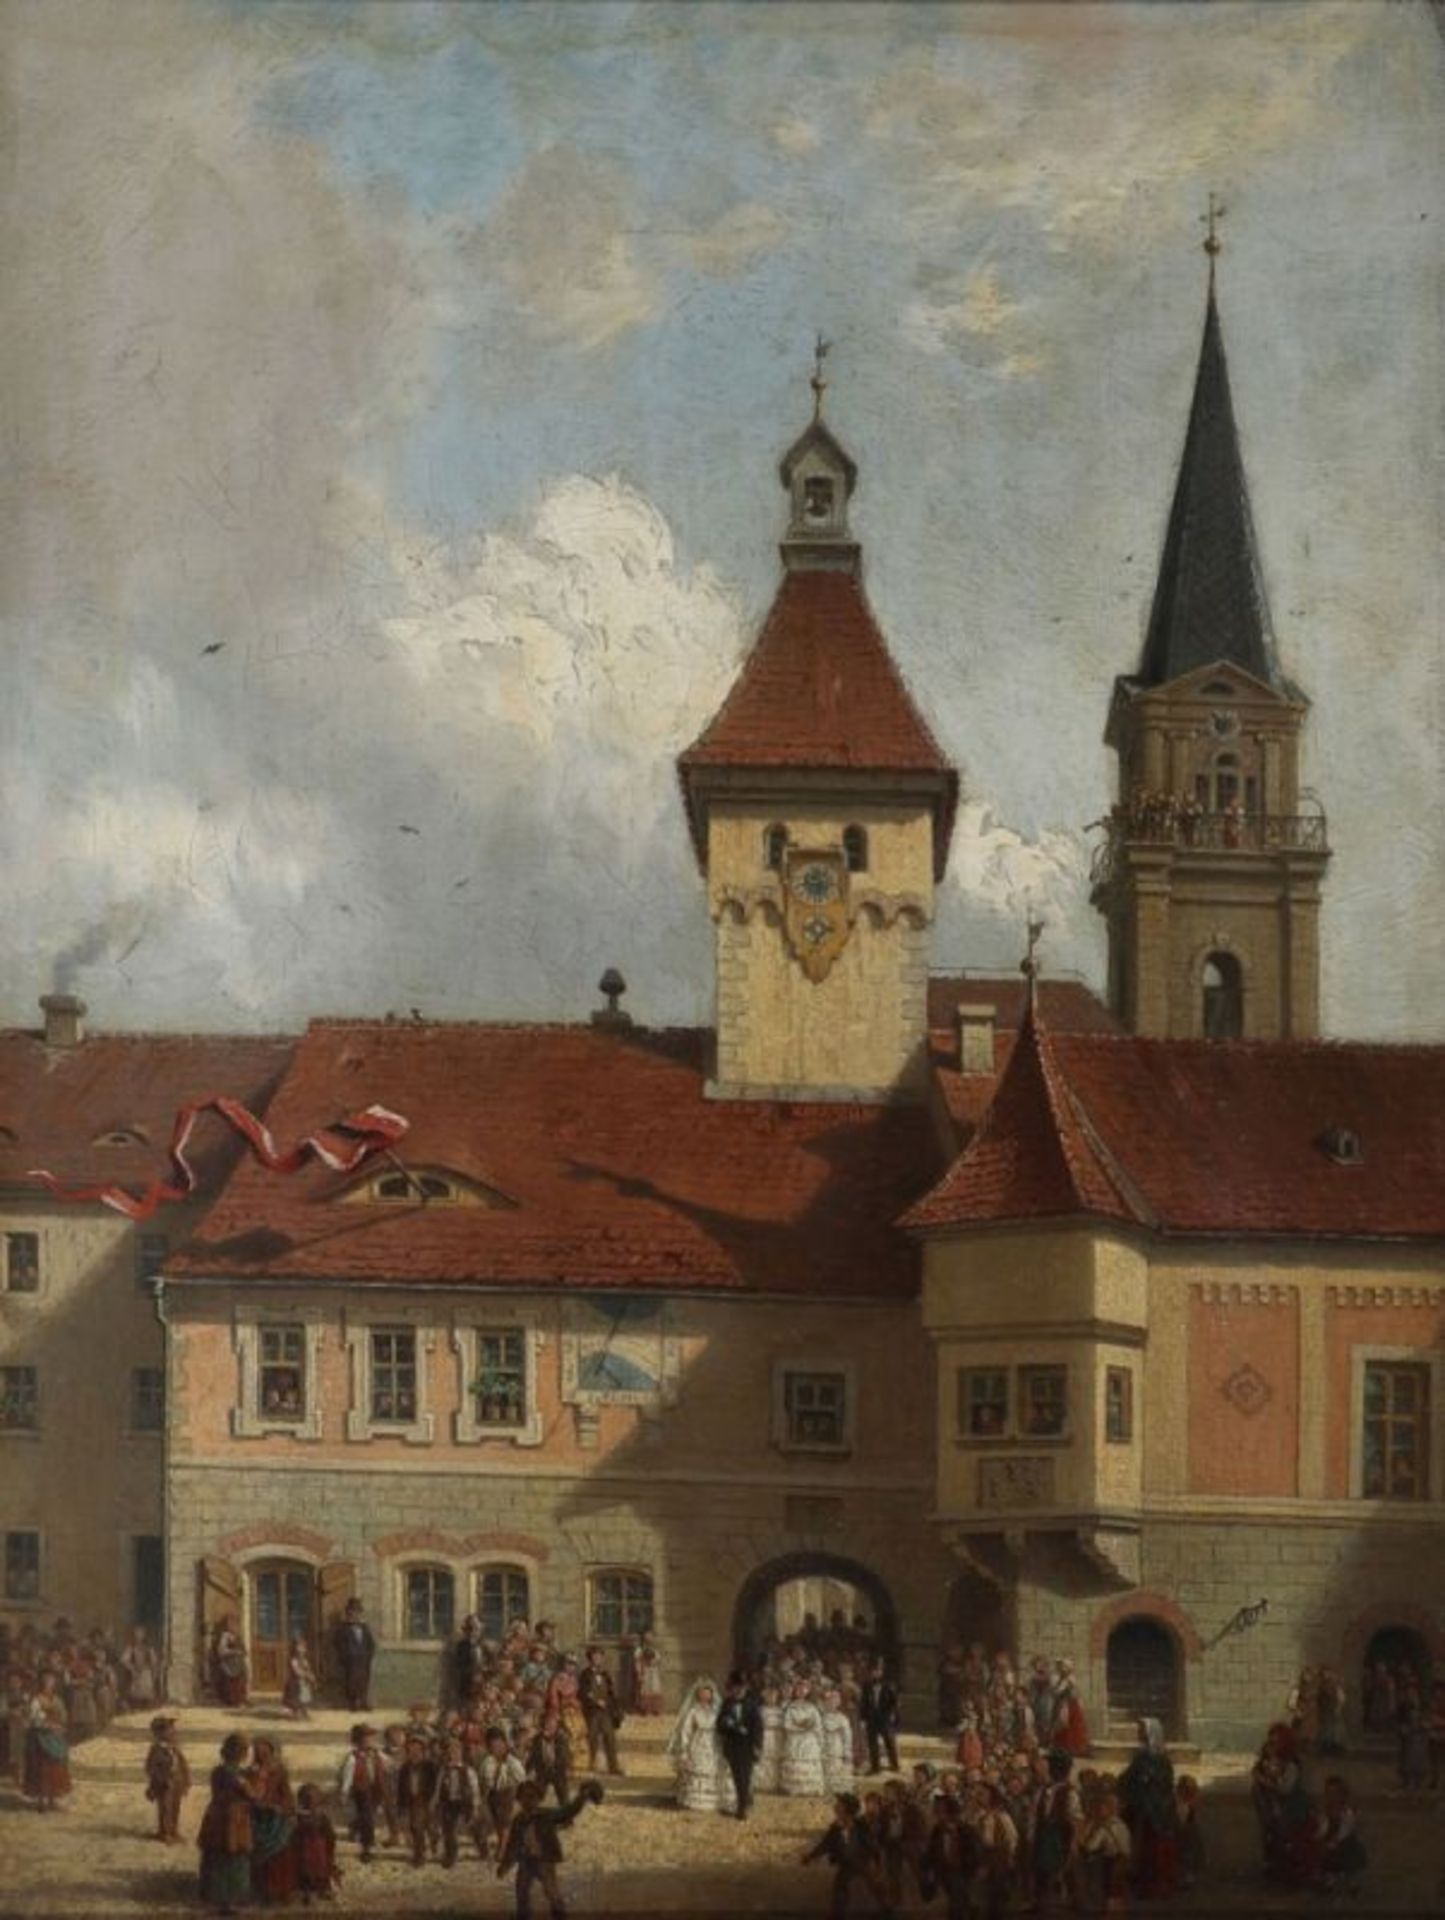 Künstler des 19. Jahrhunderts- Große Hochzeitsgesellschaft vor Schloss - Öl/Lwd. 33,8 x 27,4 cm.